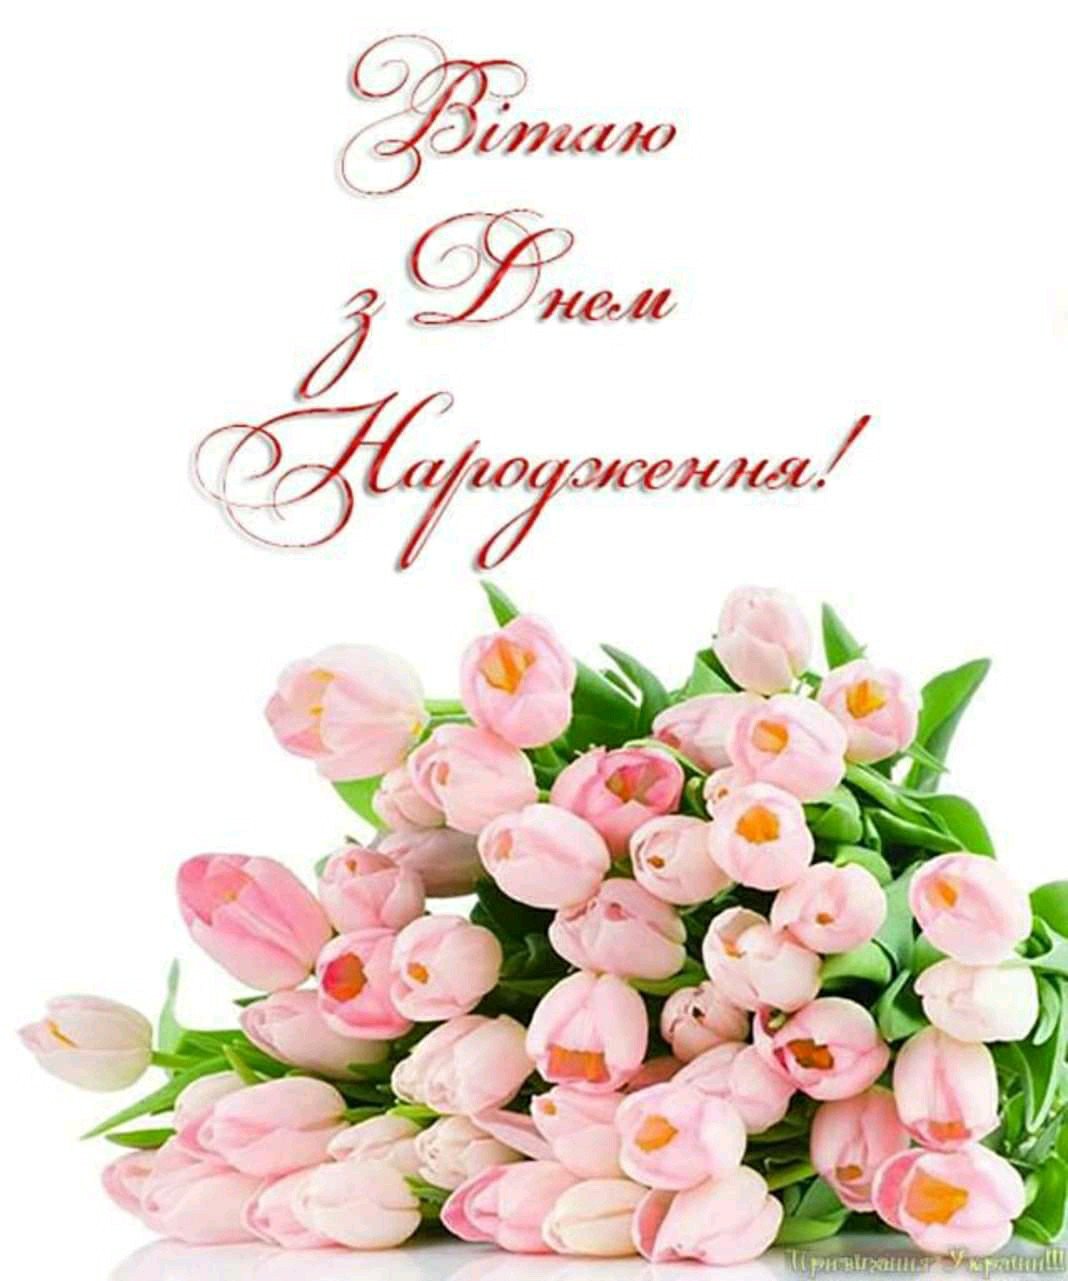 Поздравить с днем рождения на украинском. З днем народження. Открытка с др с тюльпанами. Вітаю з днем народження. Листівки з днем народження.